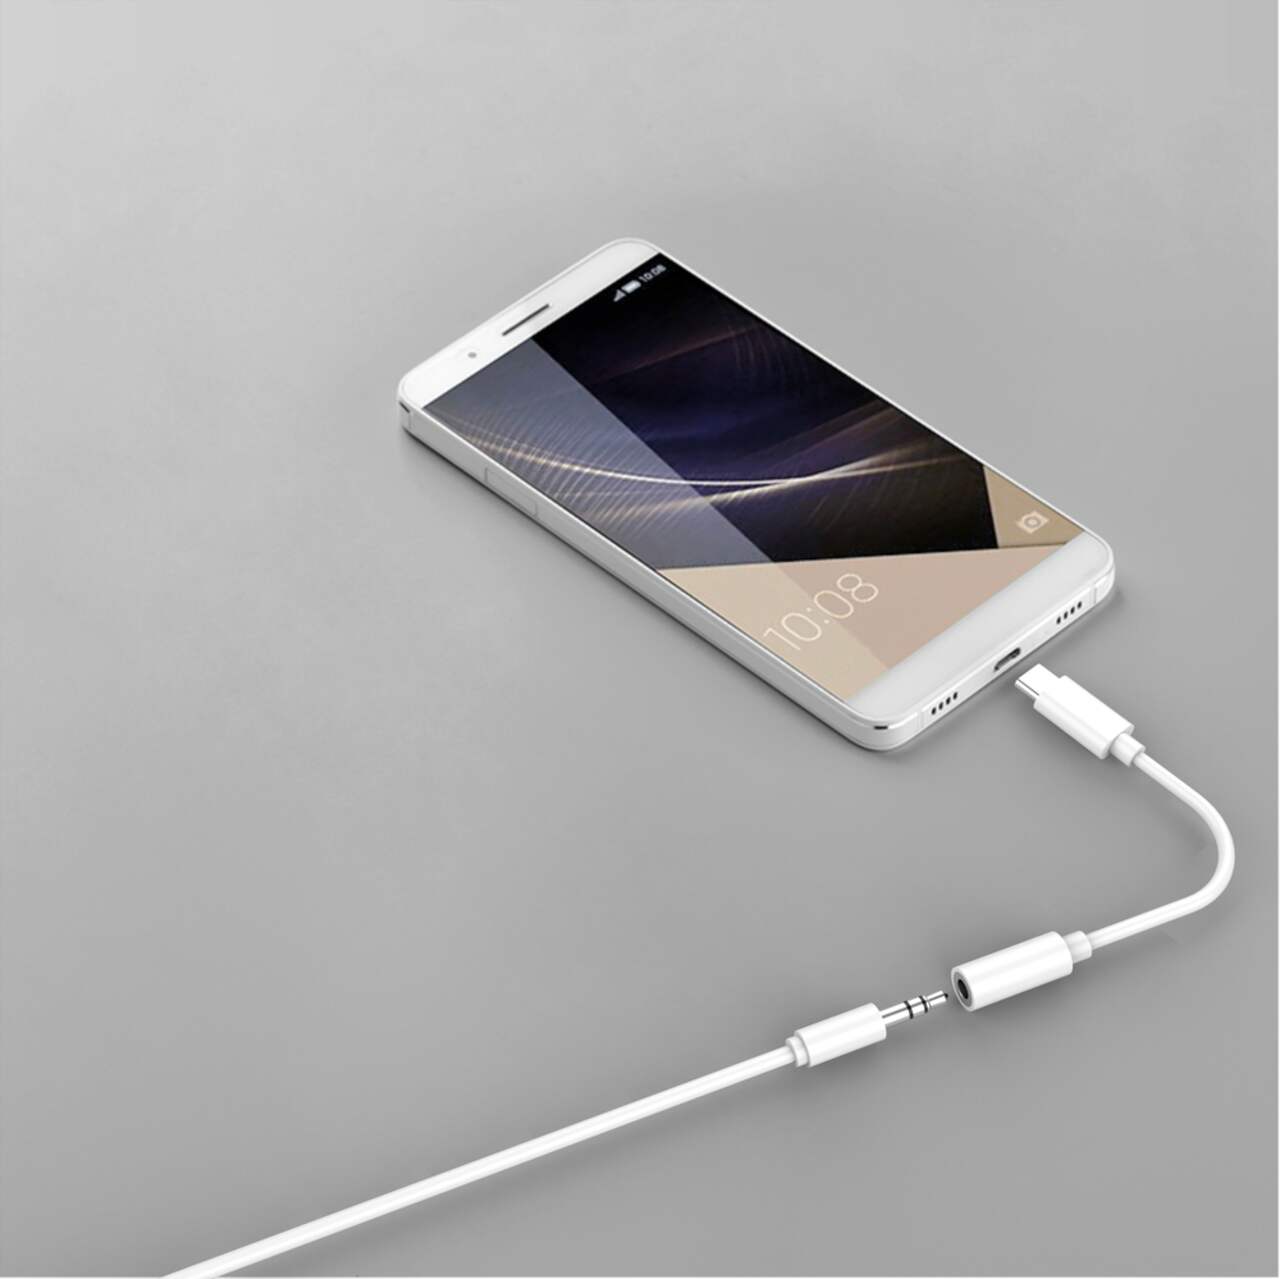 Câble Audio USB C vers auxiliaire Voiture pour iPhone, câble en